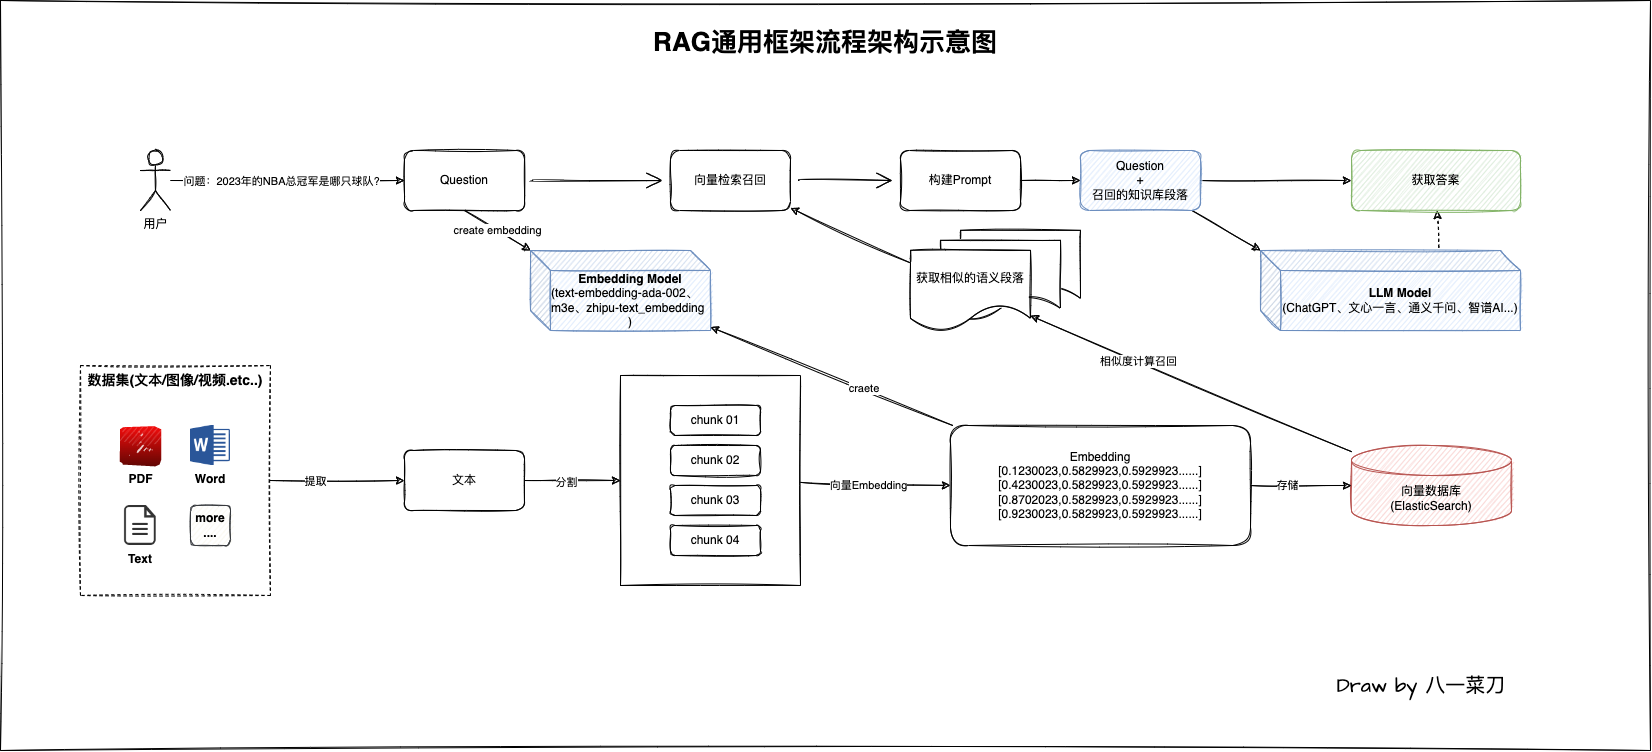 图1-RAG通用框架流程架构示意图